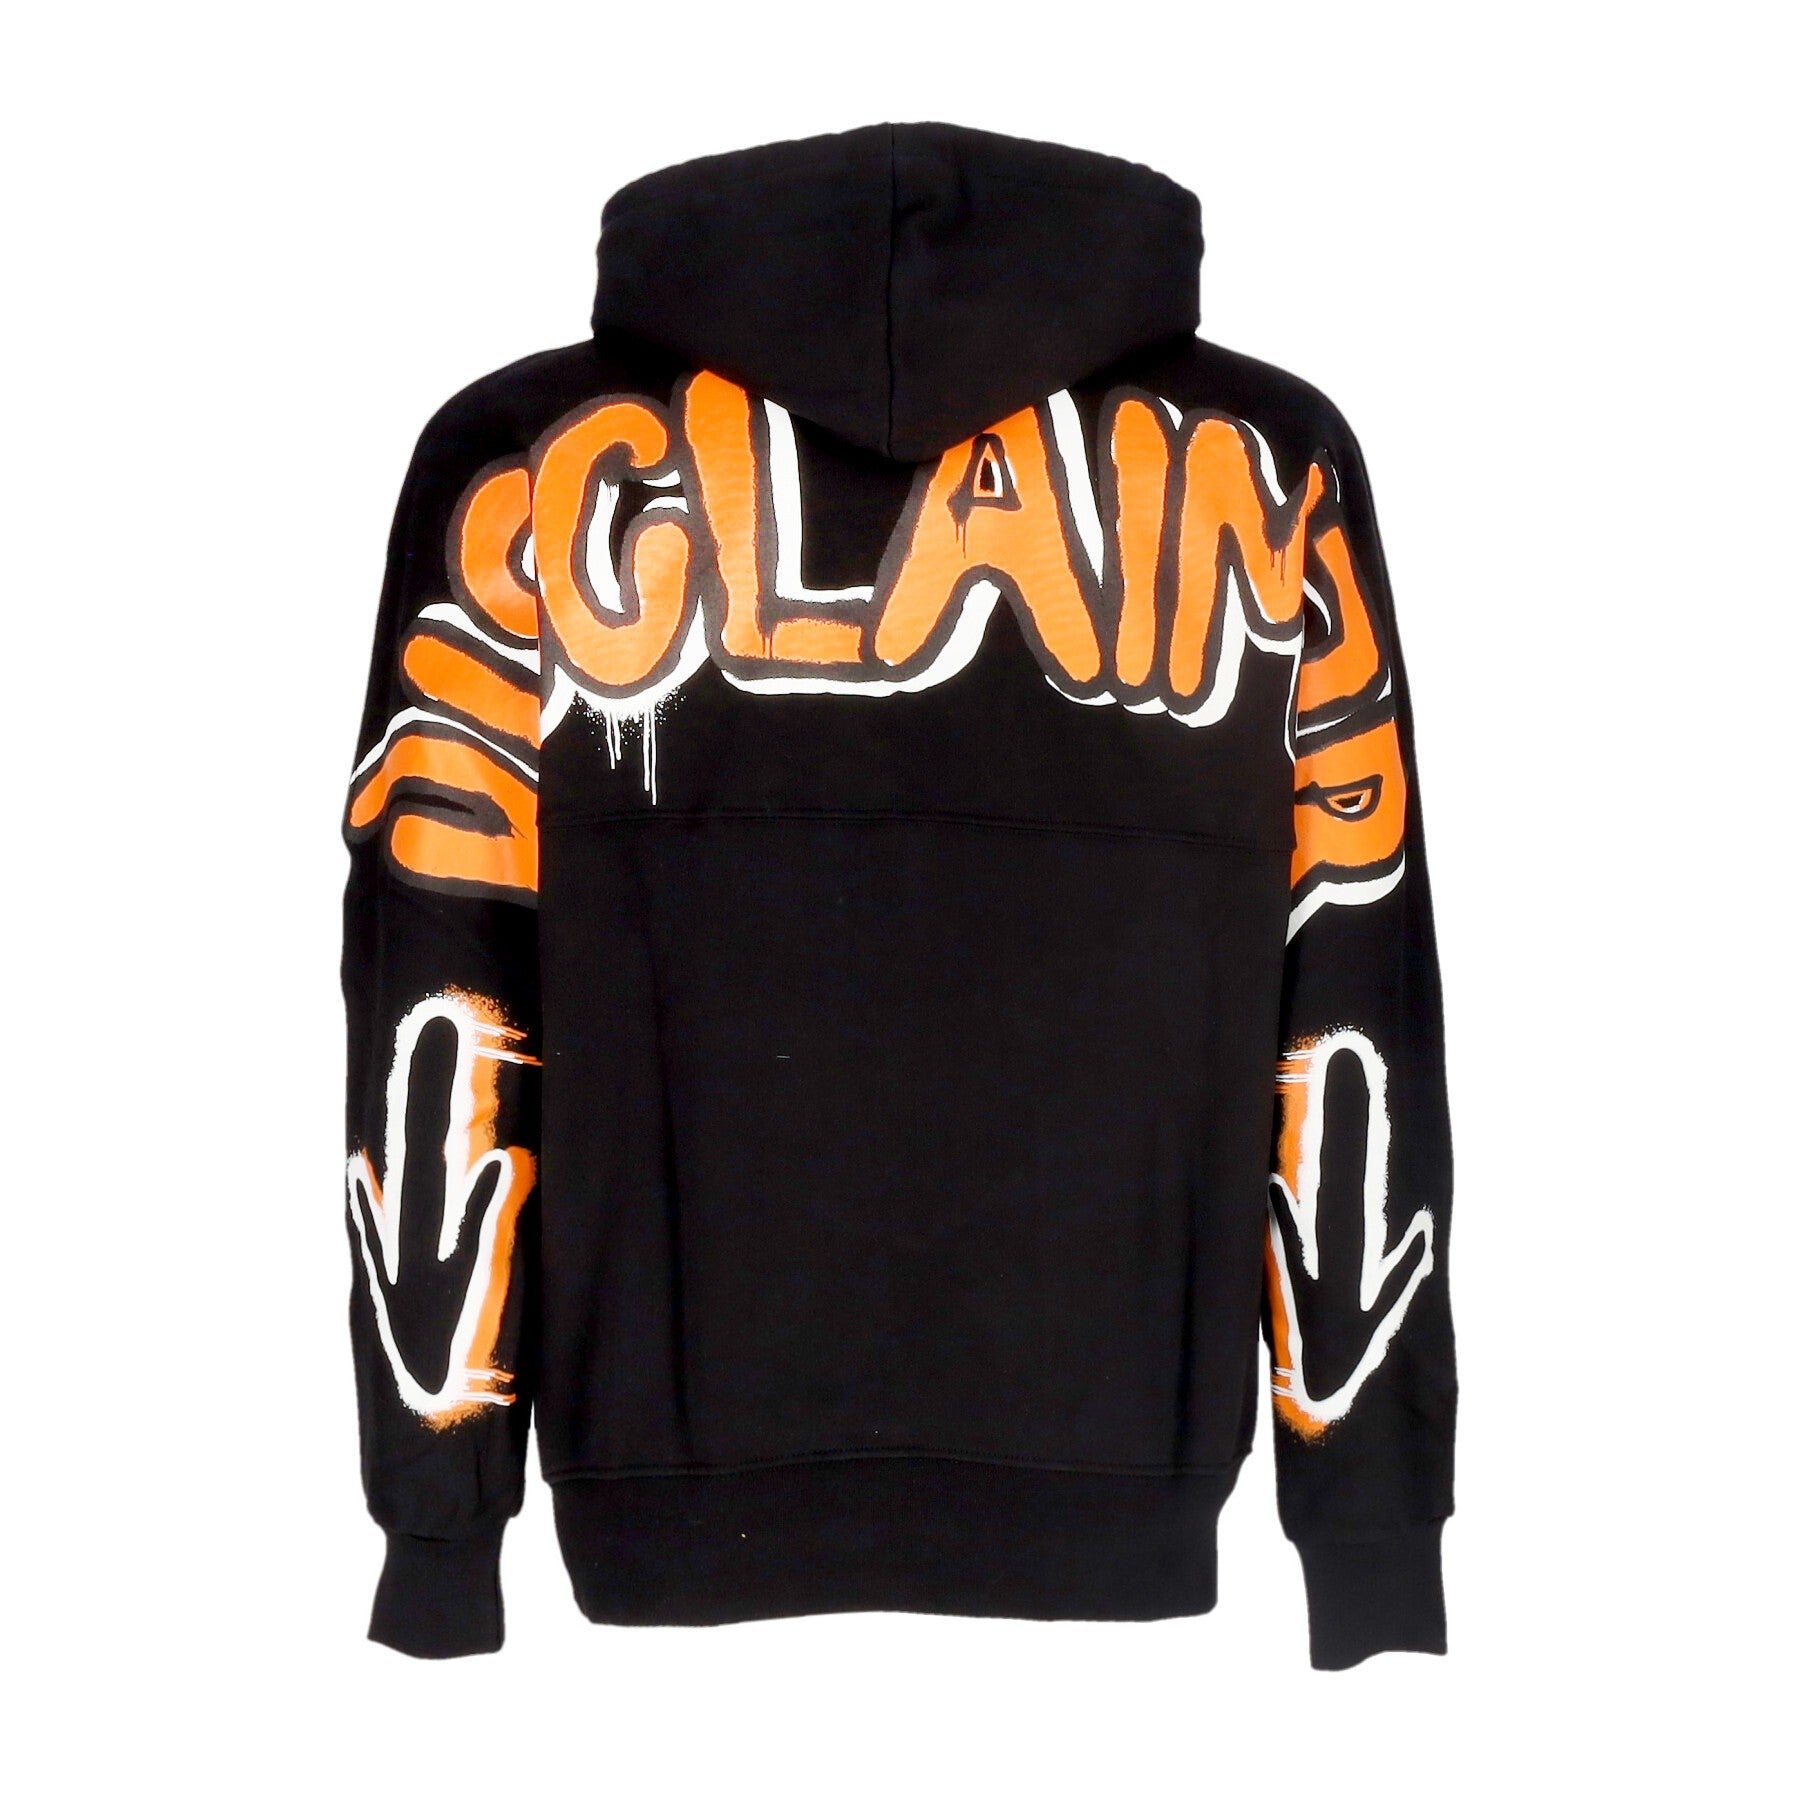 Men's Lightweight Hooded Sweatshirt Back Colored Big Logo Hoodie Black/orange